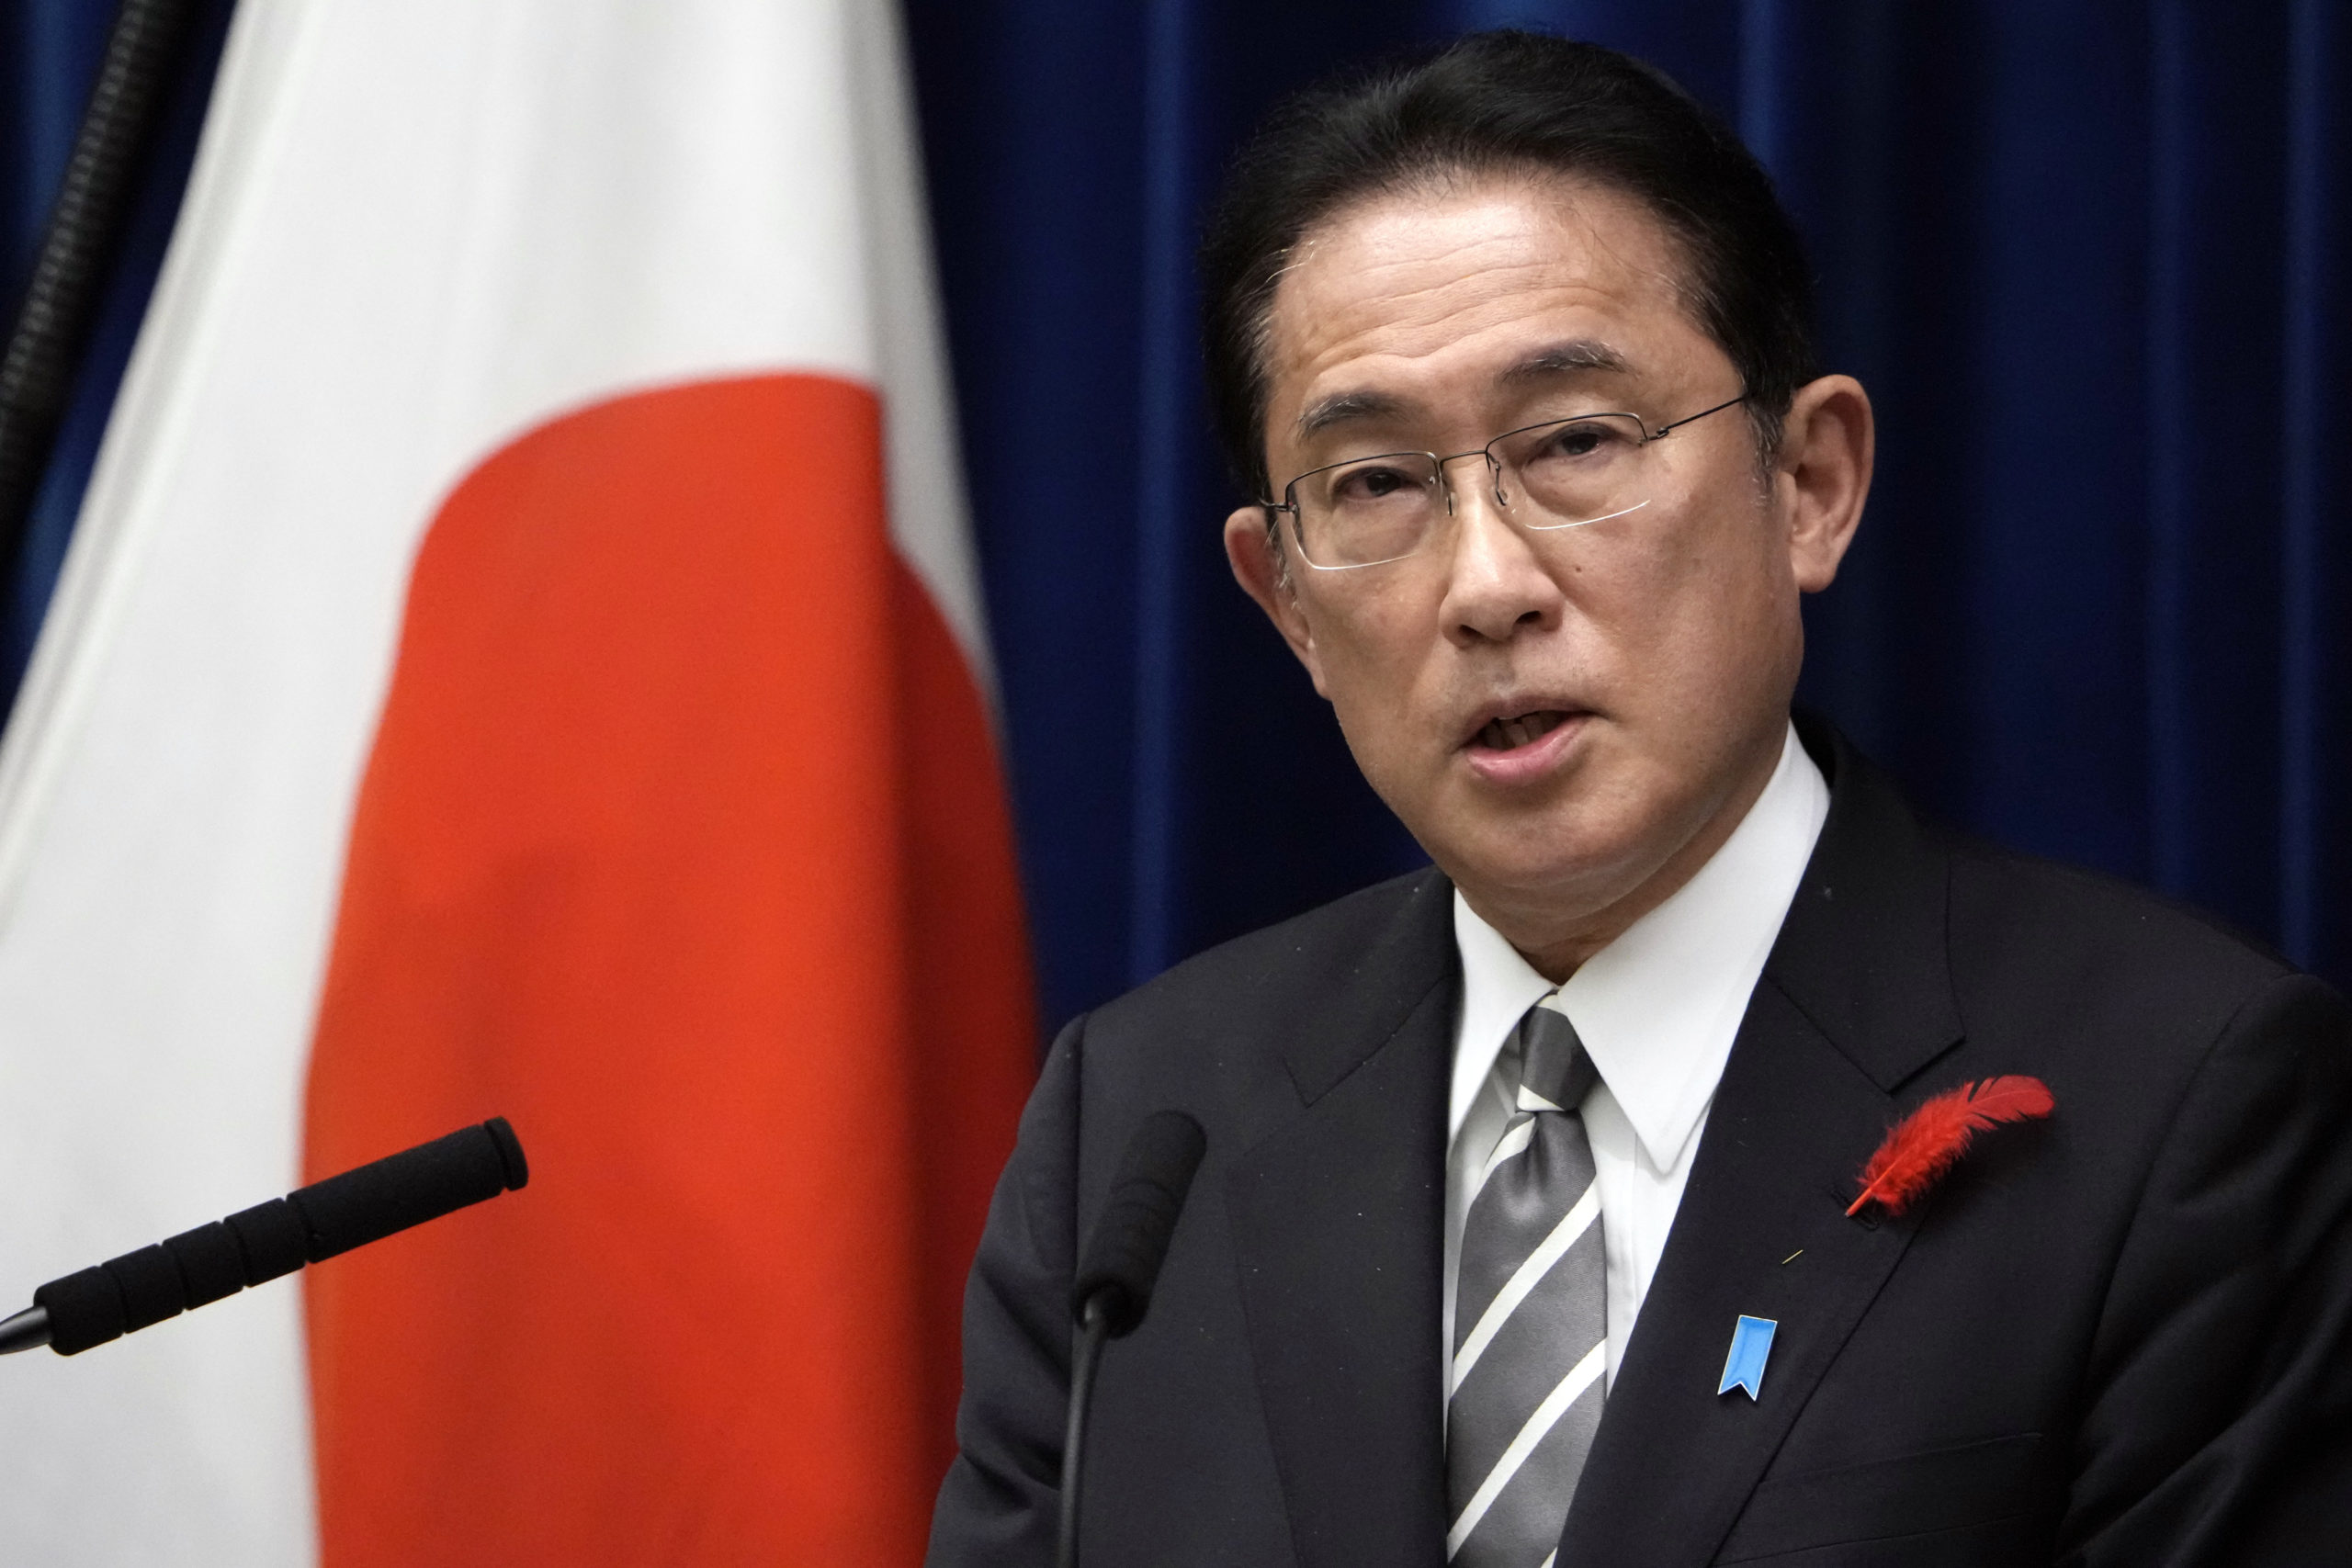 Ο Ιάπωνας πρωθυπουργός βλέπει όλο και μεγαλύτερη πιθανότητα να χρησιμοποιήσει η Ρωσία πυρηνικά όπλα